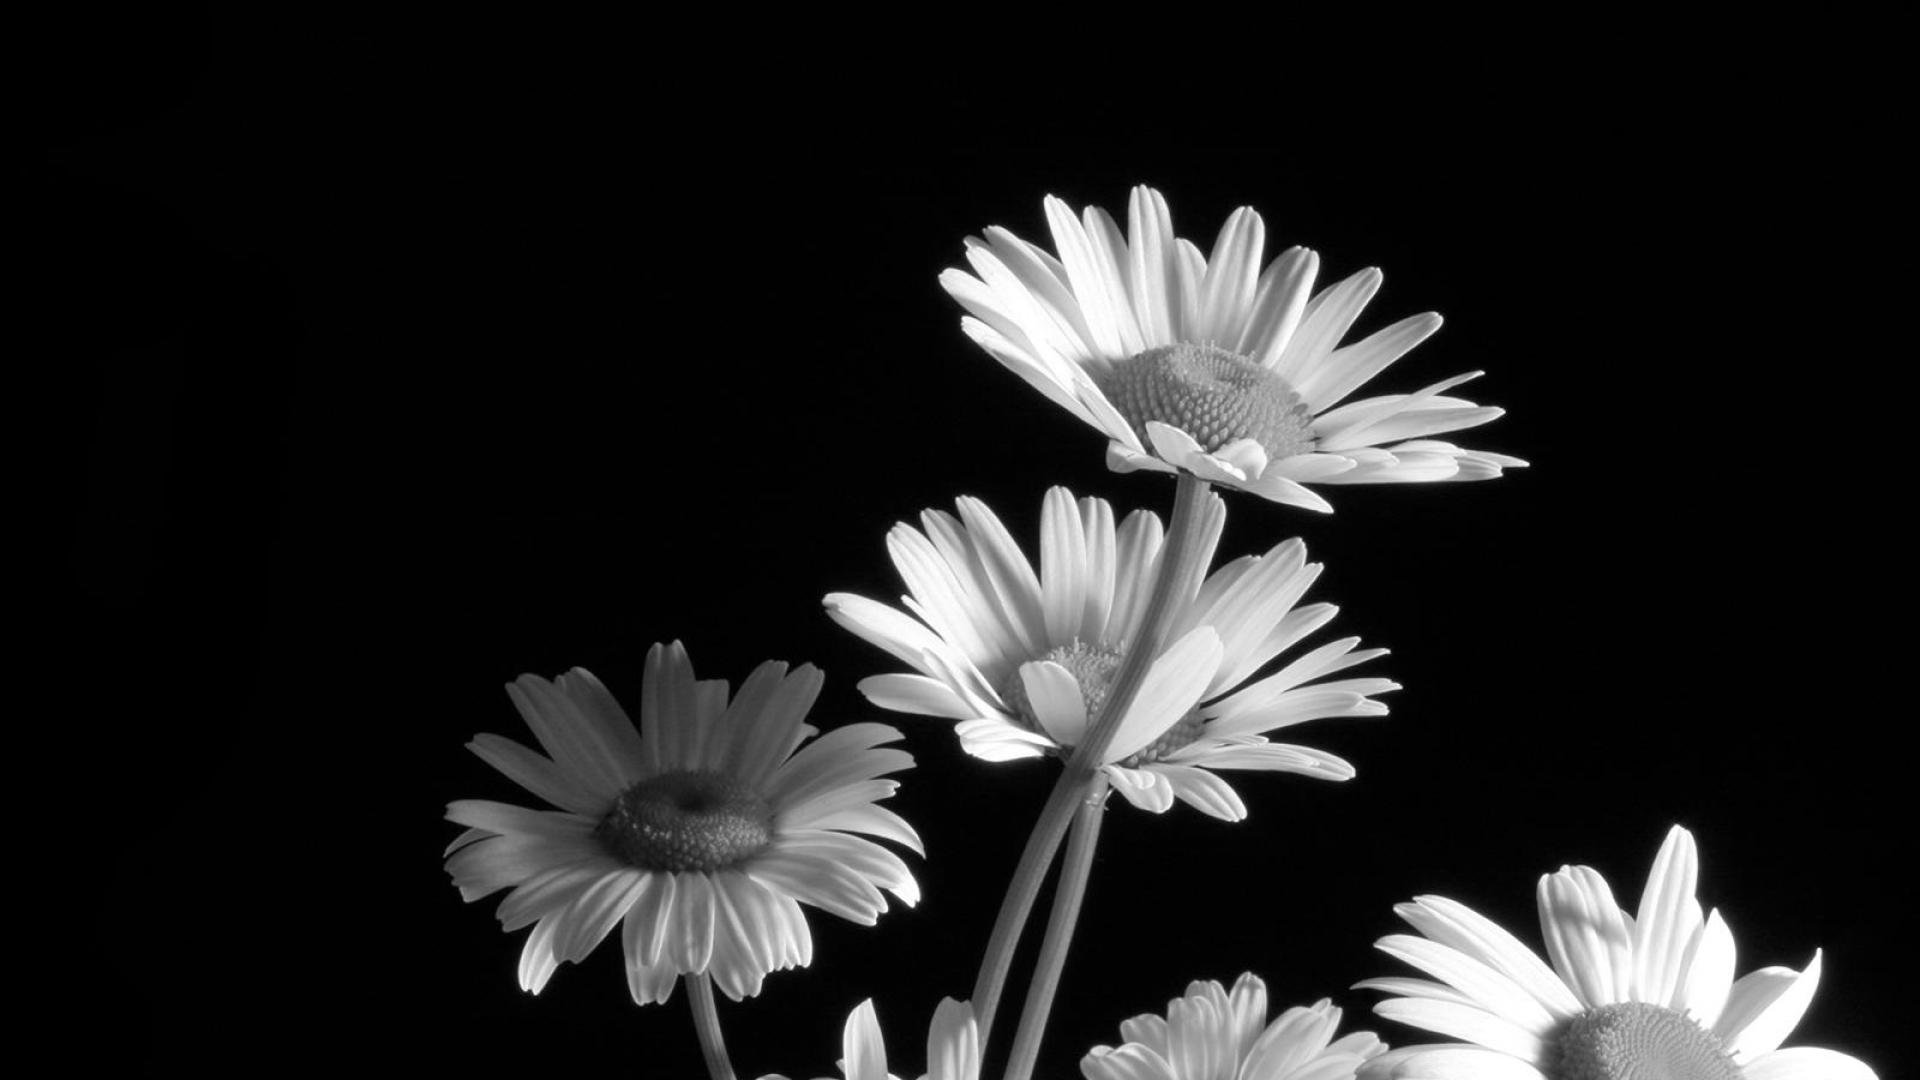 Wallpaper - Black & White Flower , HD Wallpaper & Backgrounds